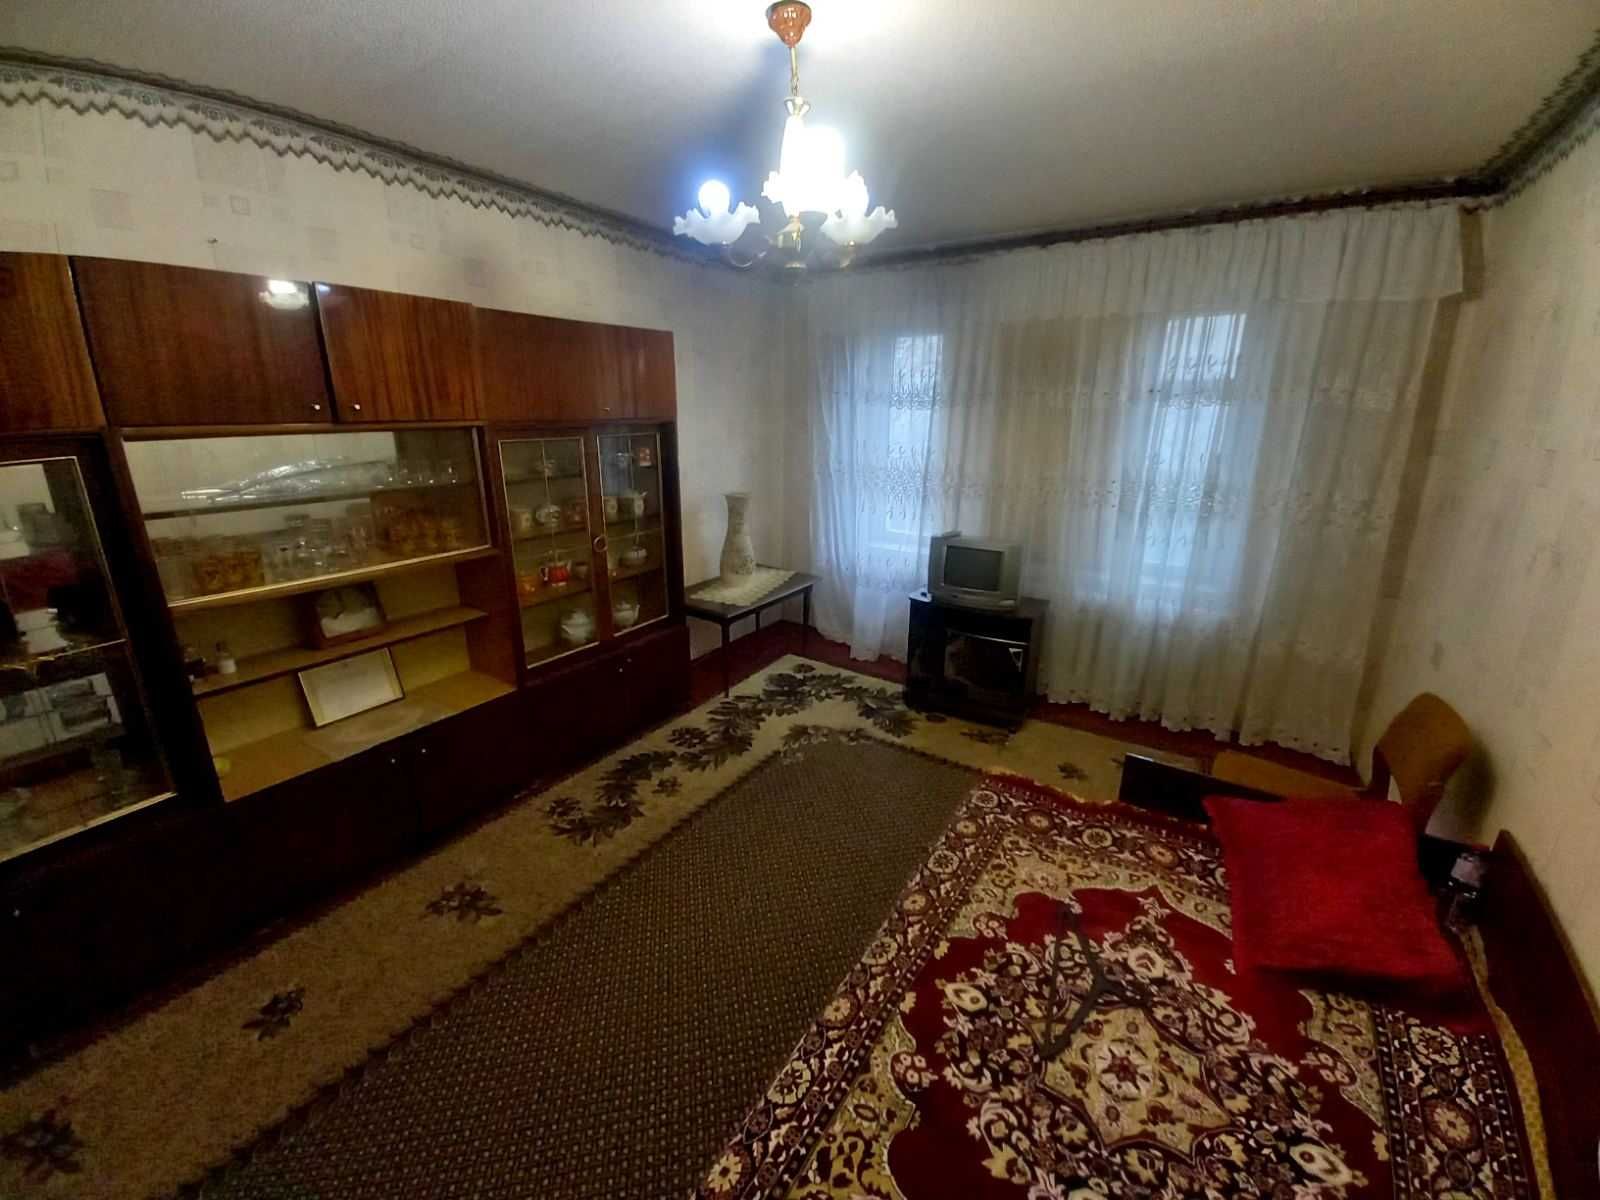 Квартира 2 комнатная ул.Днепровская 5 на Станкострое